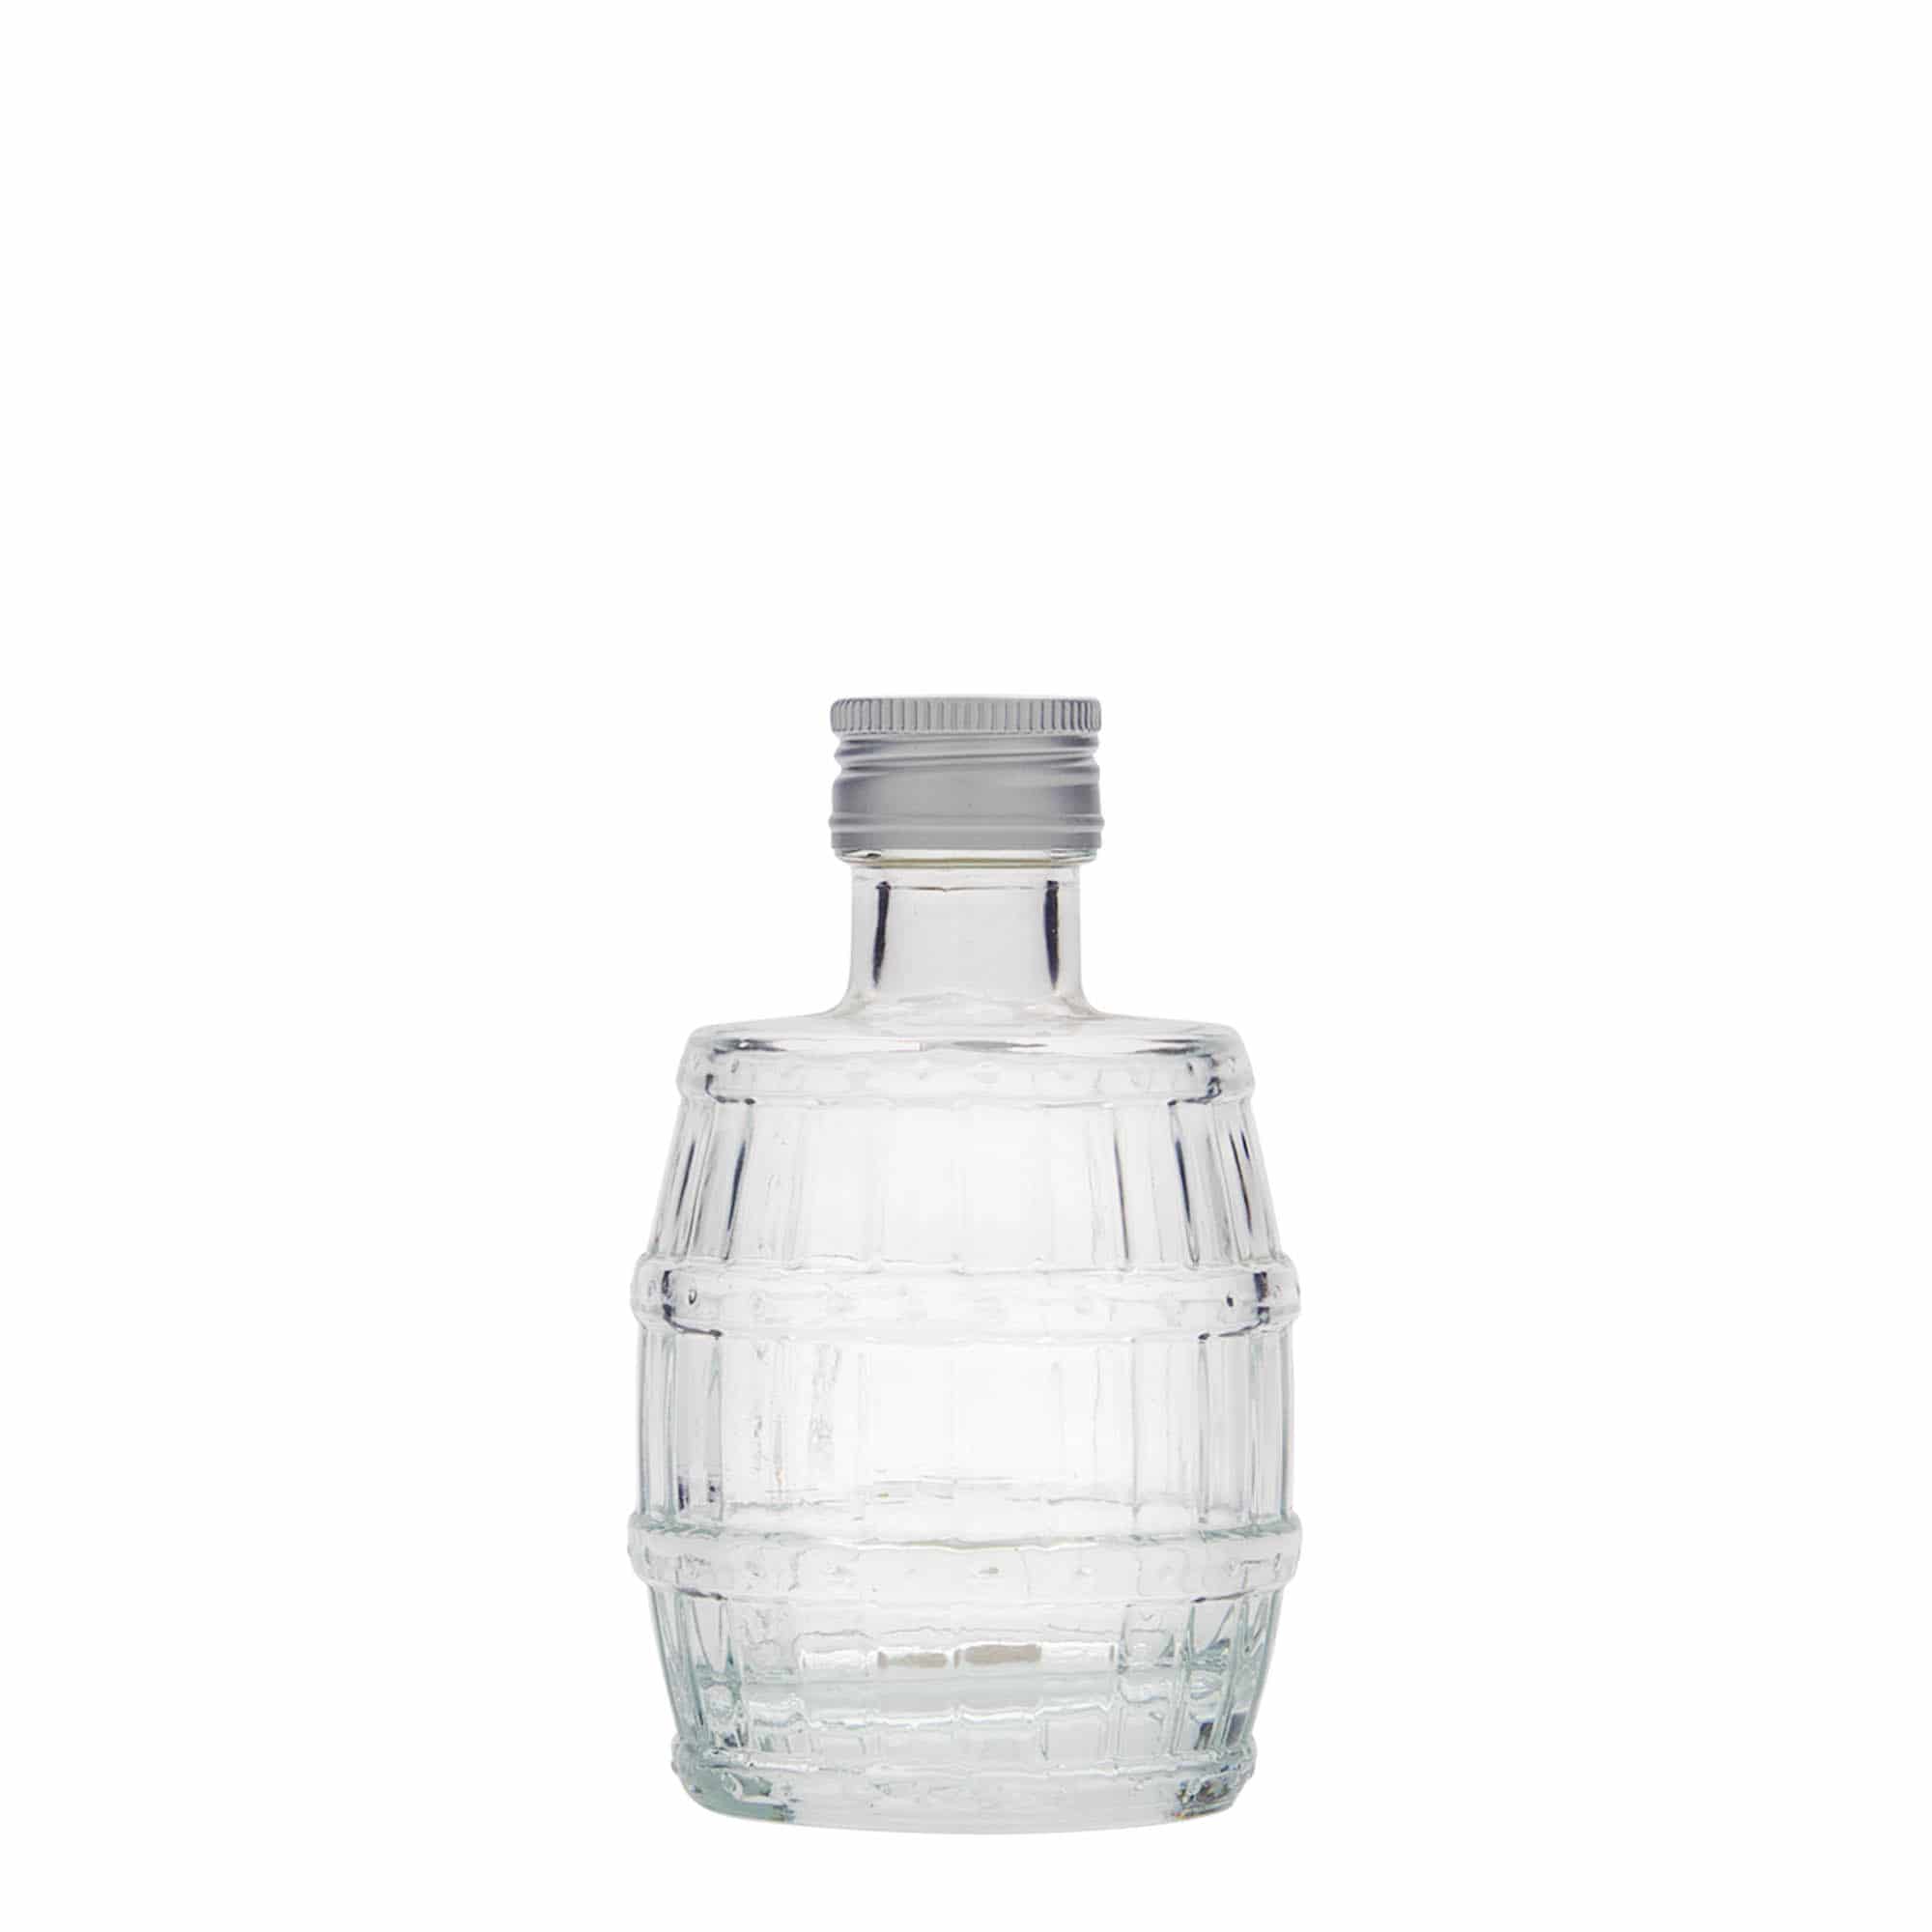 100 ml glass bottle 'Fass', closure: PP 24